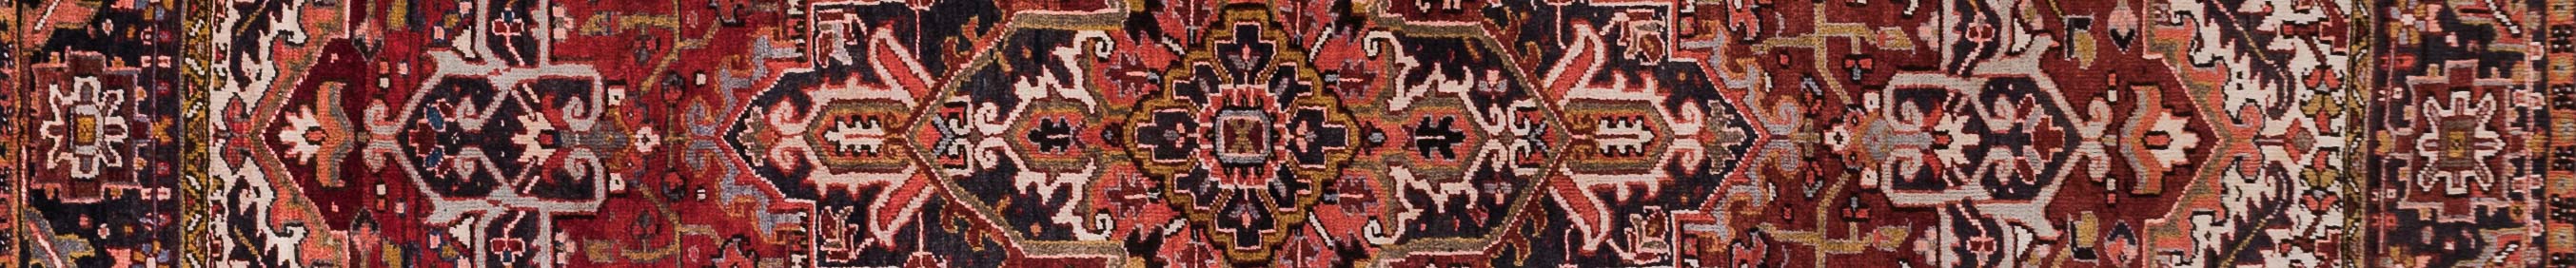 Gravan Persian Carpet Rug N1Carpet Canada Montreal Tapis Persan 3190